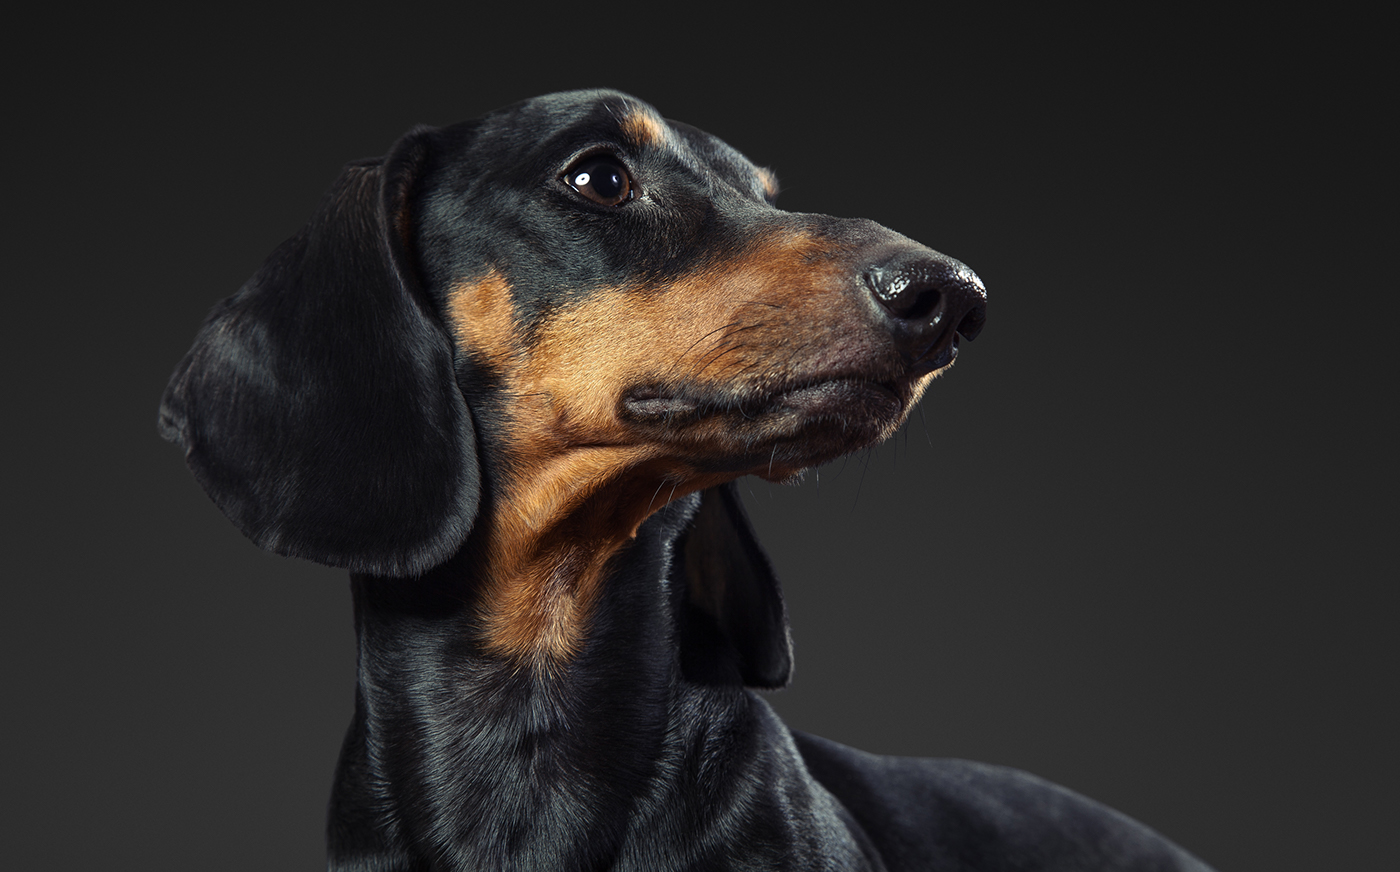 dachshund dog portrait photo animal studio lowkey dark